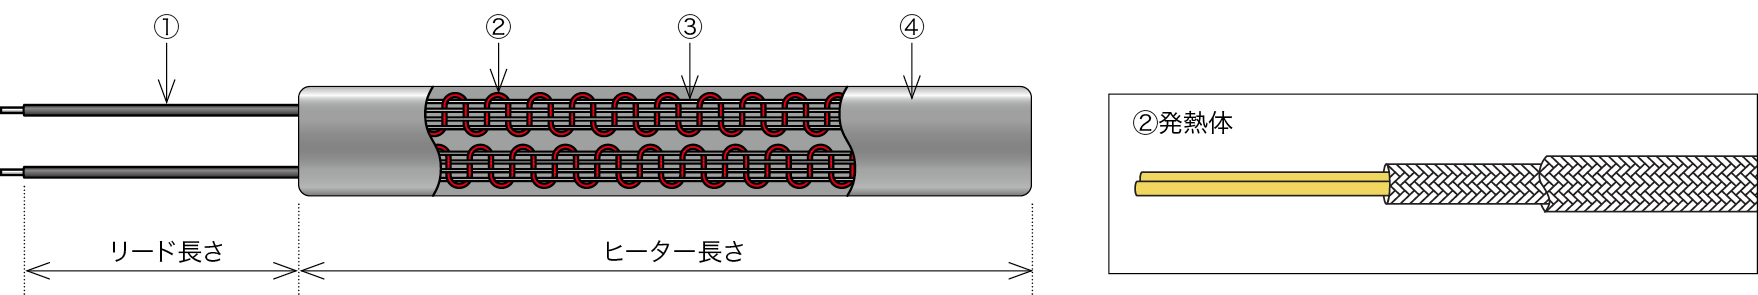 テープヒーター（リボンヒーター）の構成図